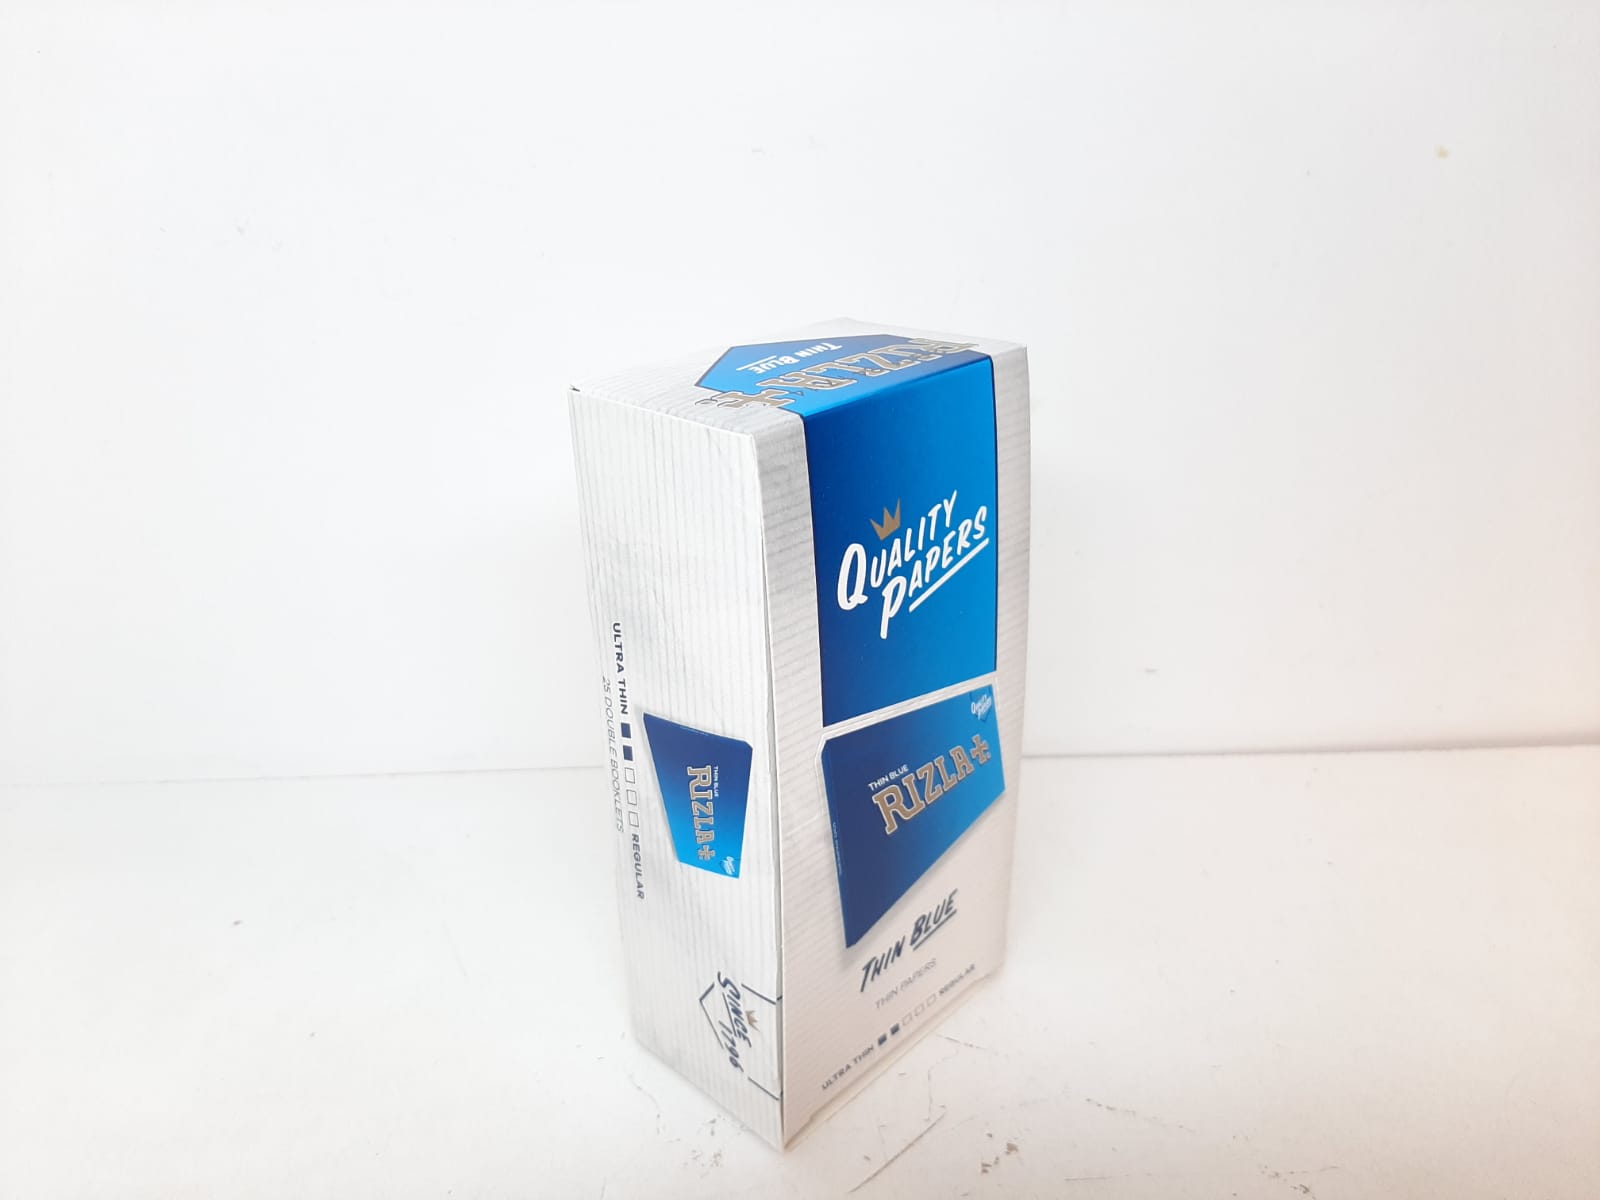 Rizla Blå Mini Thin Dubbel DISPLAY (cigarettpapper)